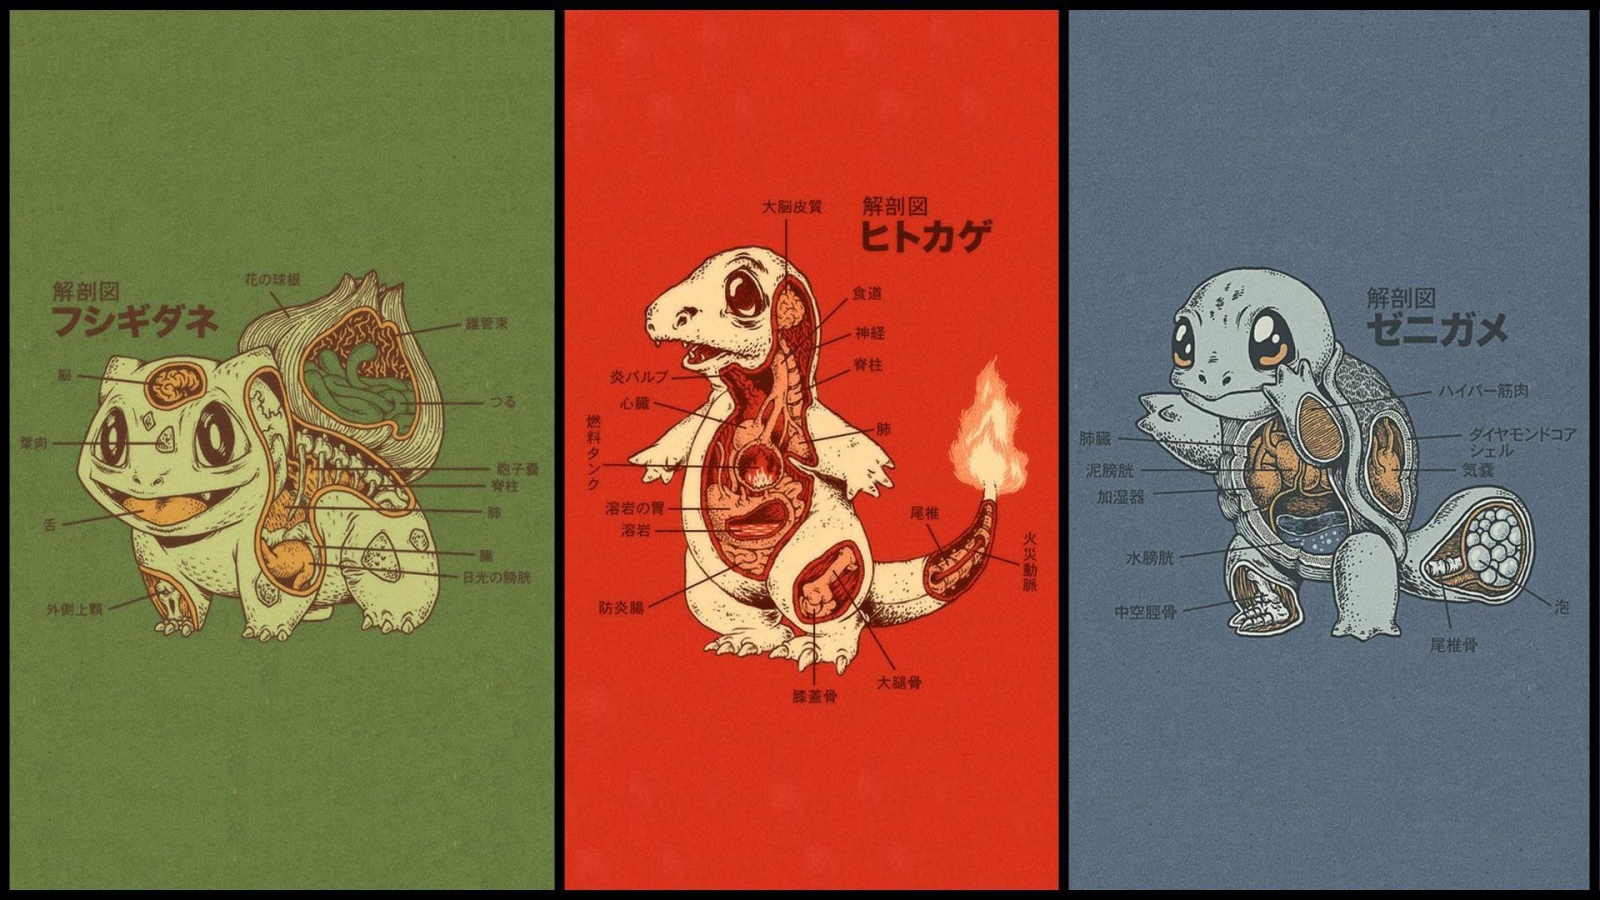 Anatomy of different Pokemon